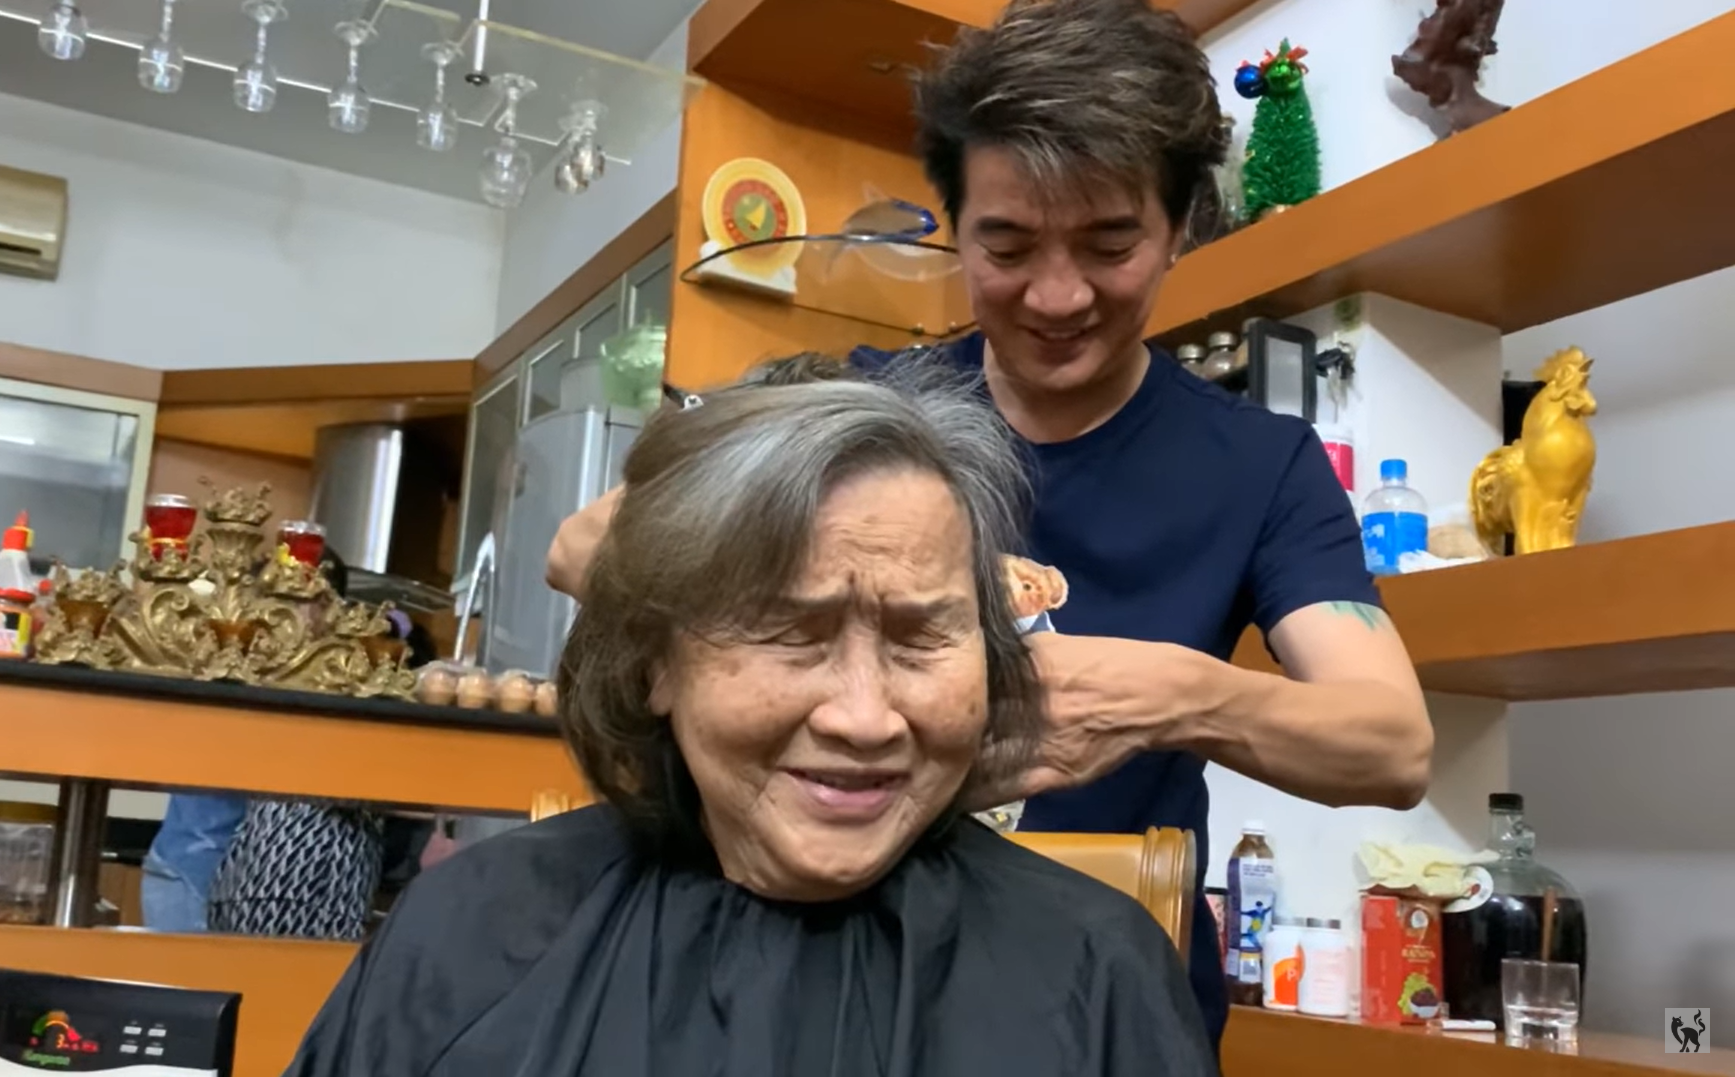 Được Đàm Vĩnh Hưng qua tận nhà cắt tóc, mẹ Hoài Linh nói câu xúc động